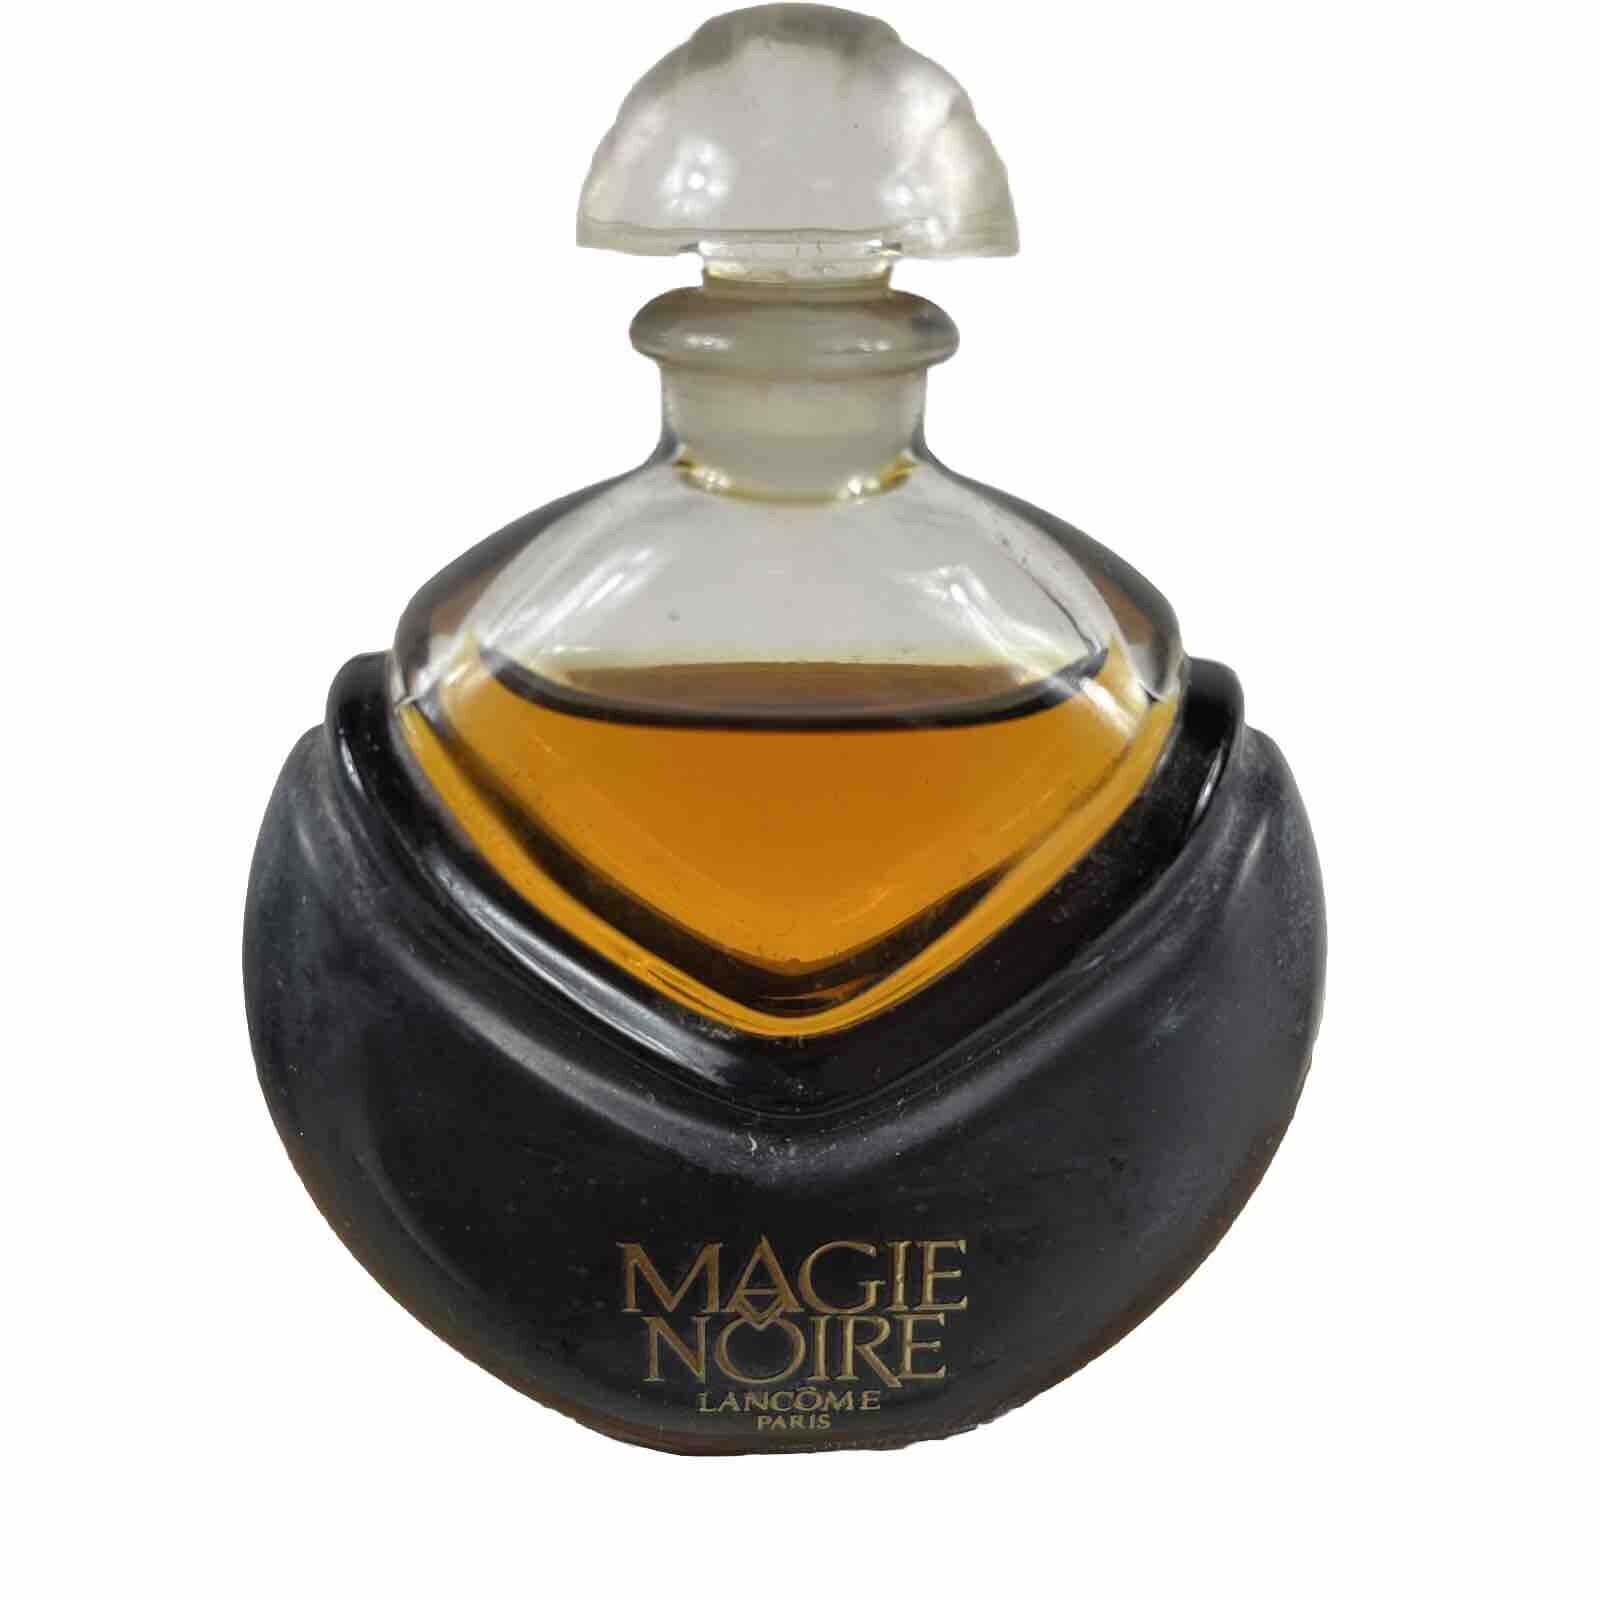 Magie Noire by Lancôme 1978 Vintage Parfum Extrait 7.5 ml 1/4 Fl Oz Full Bottle